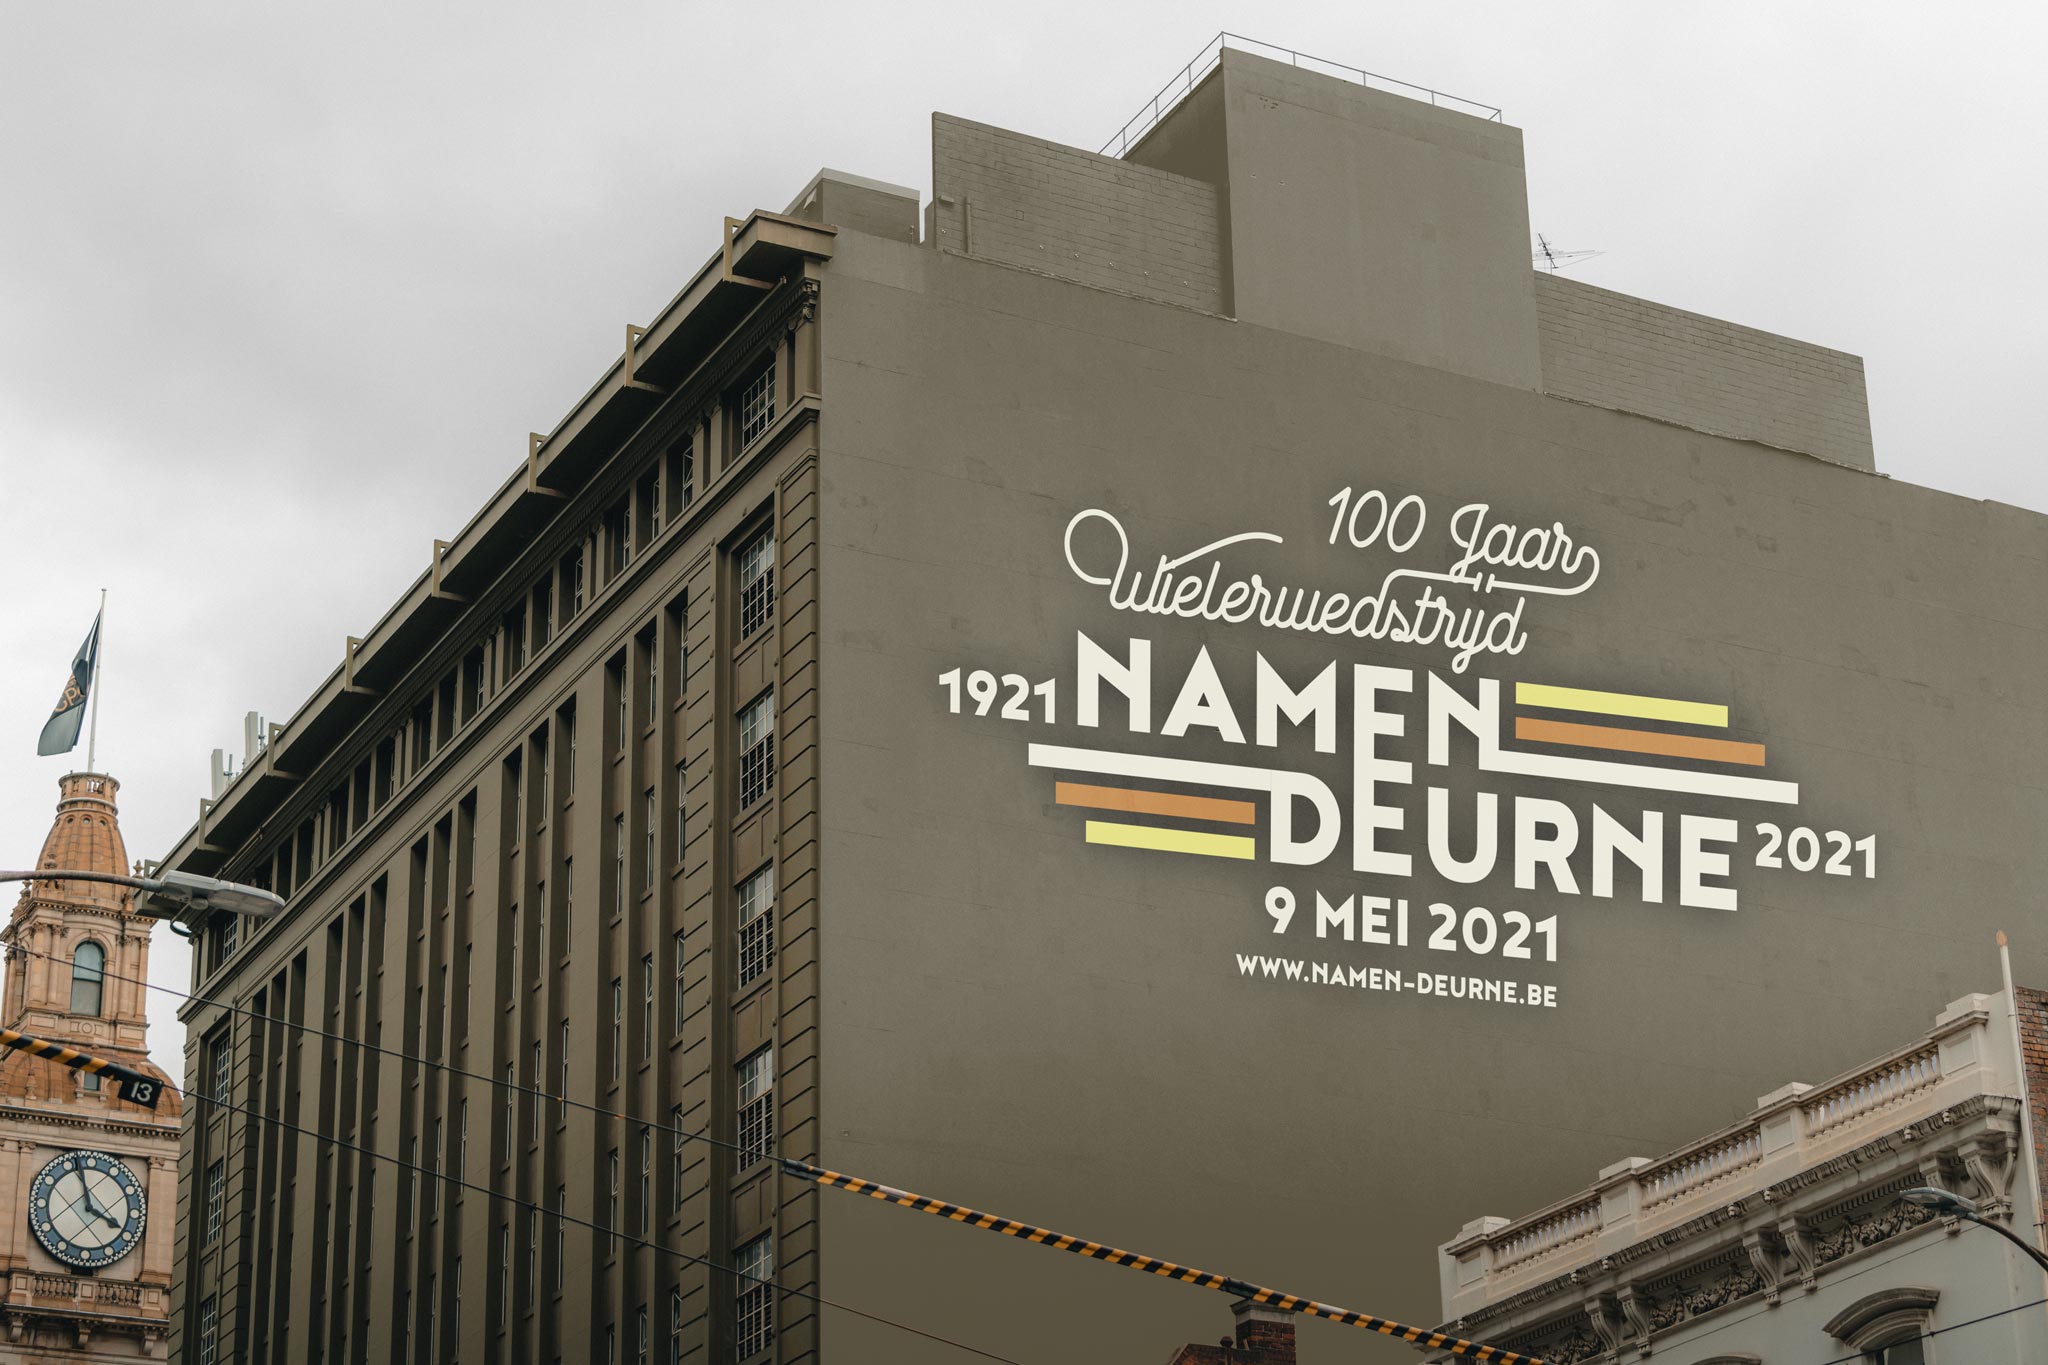 Vormgeving affiche voor historische wielerwedstrijd Namen-Deurne